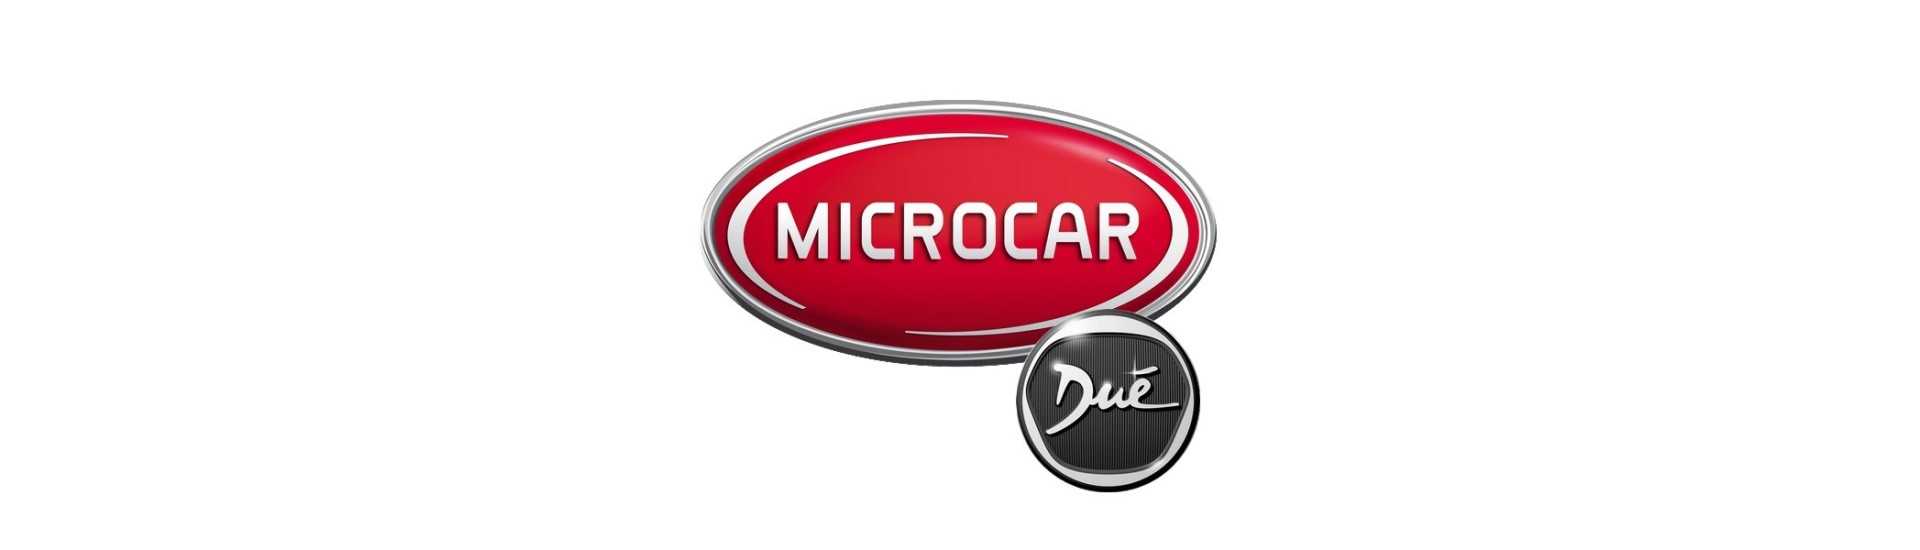 Fechadura da roda ao melhor preço para o carro sem licença Microcar Dué